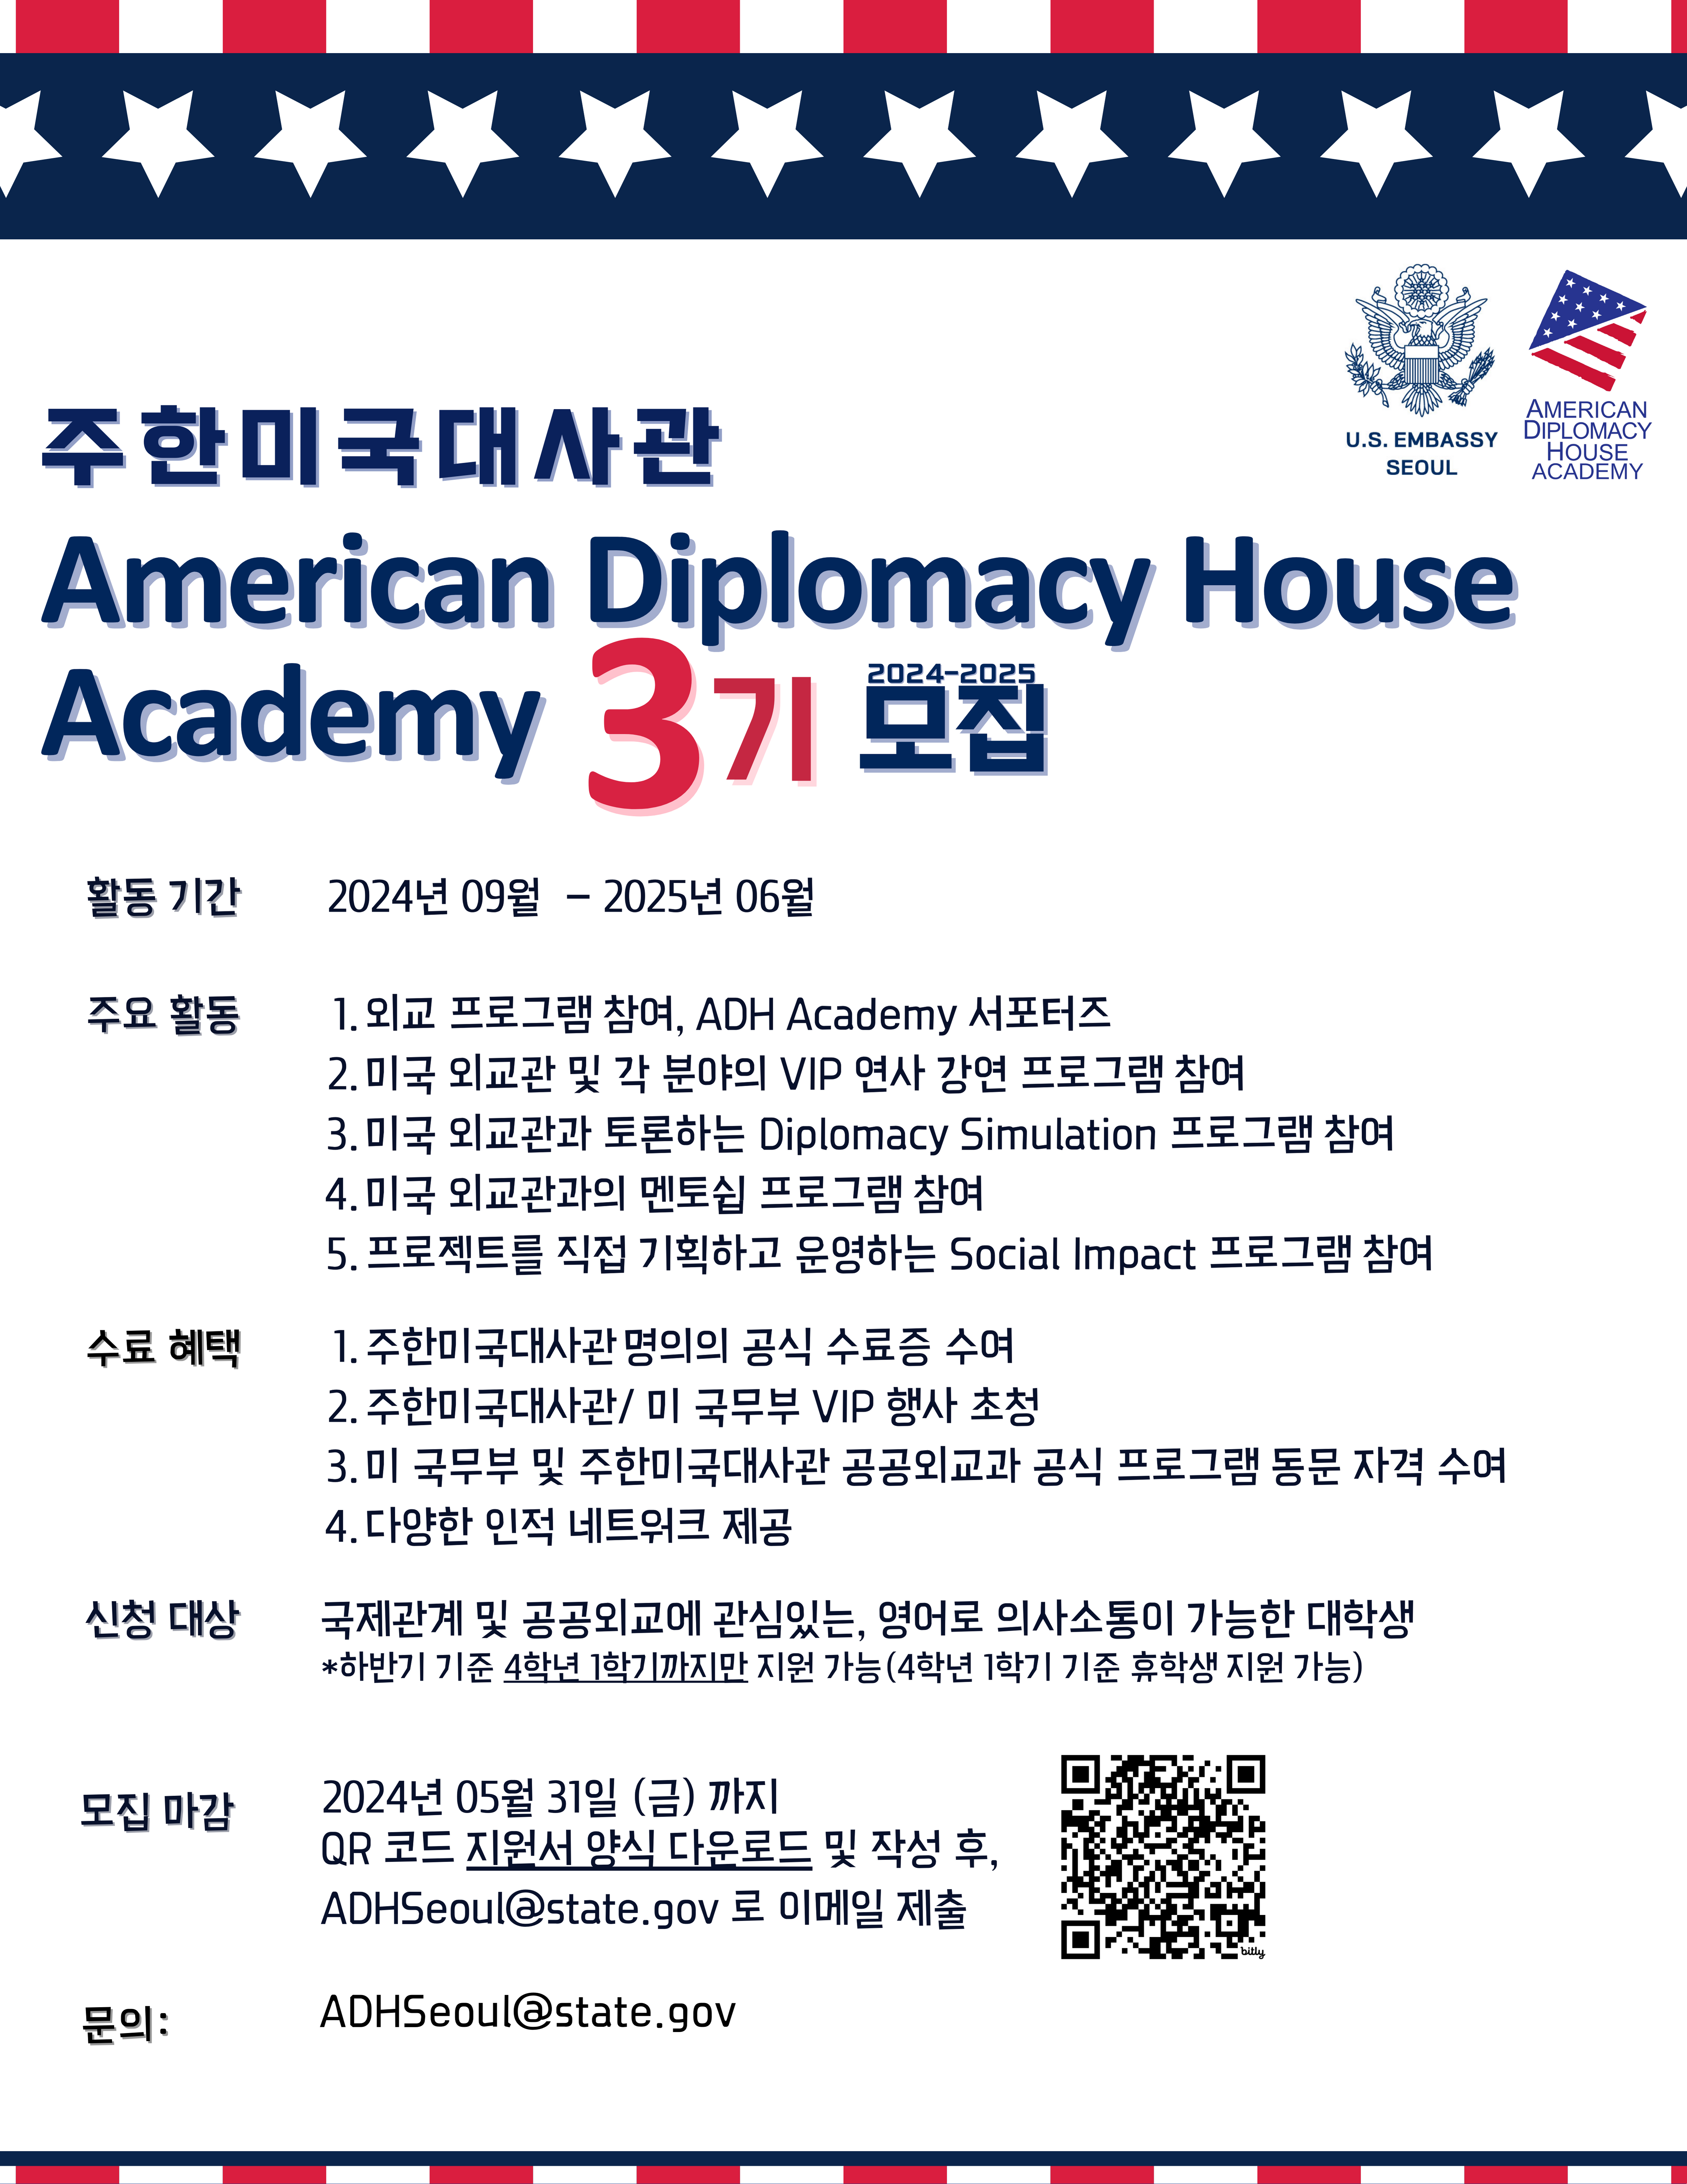 주한미국대사관 American Diplomacy House Academy 프로그램 참가자 모집